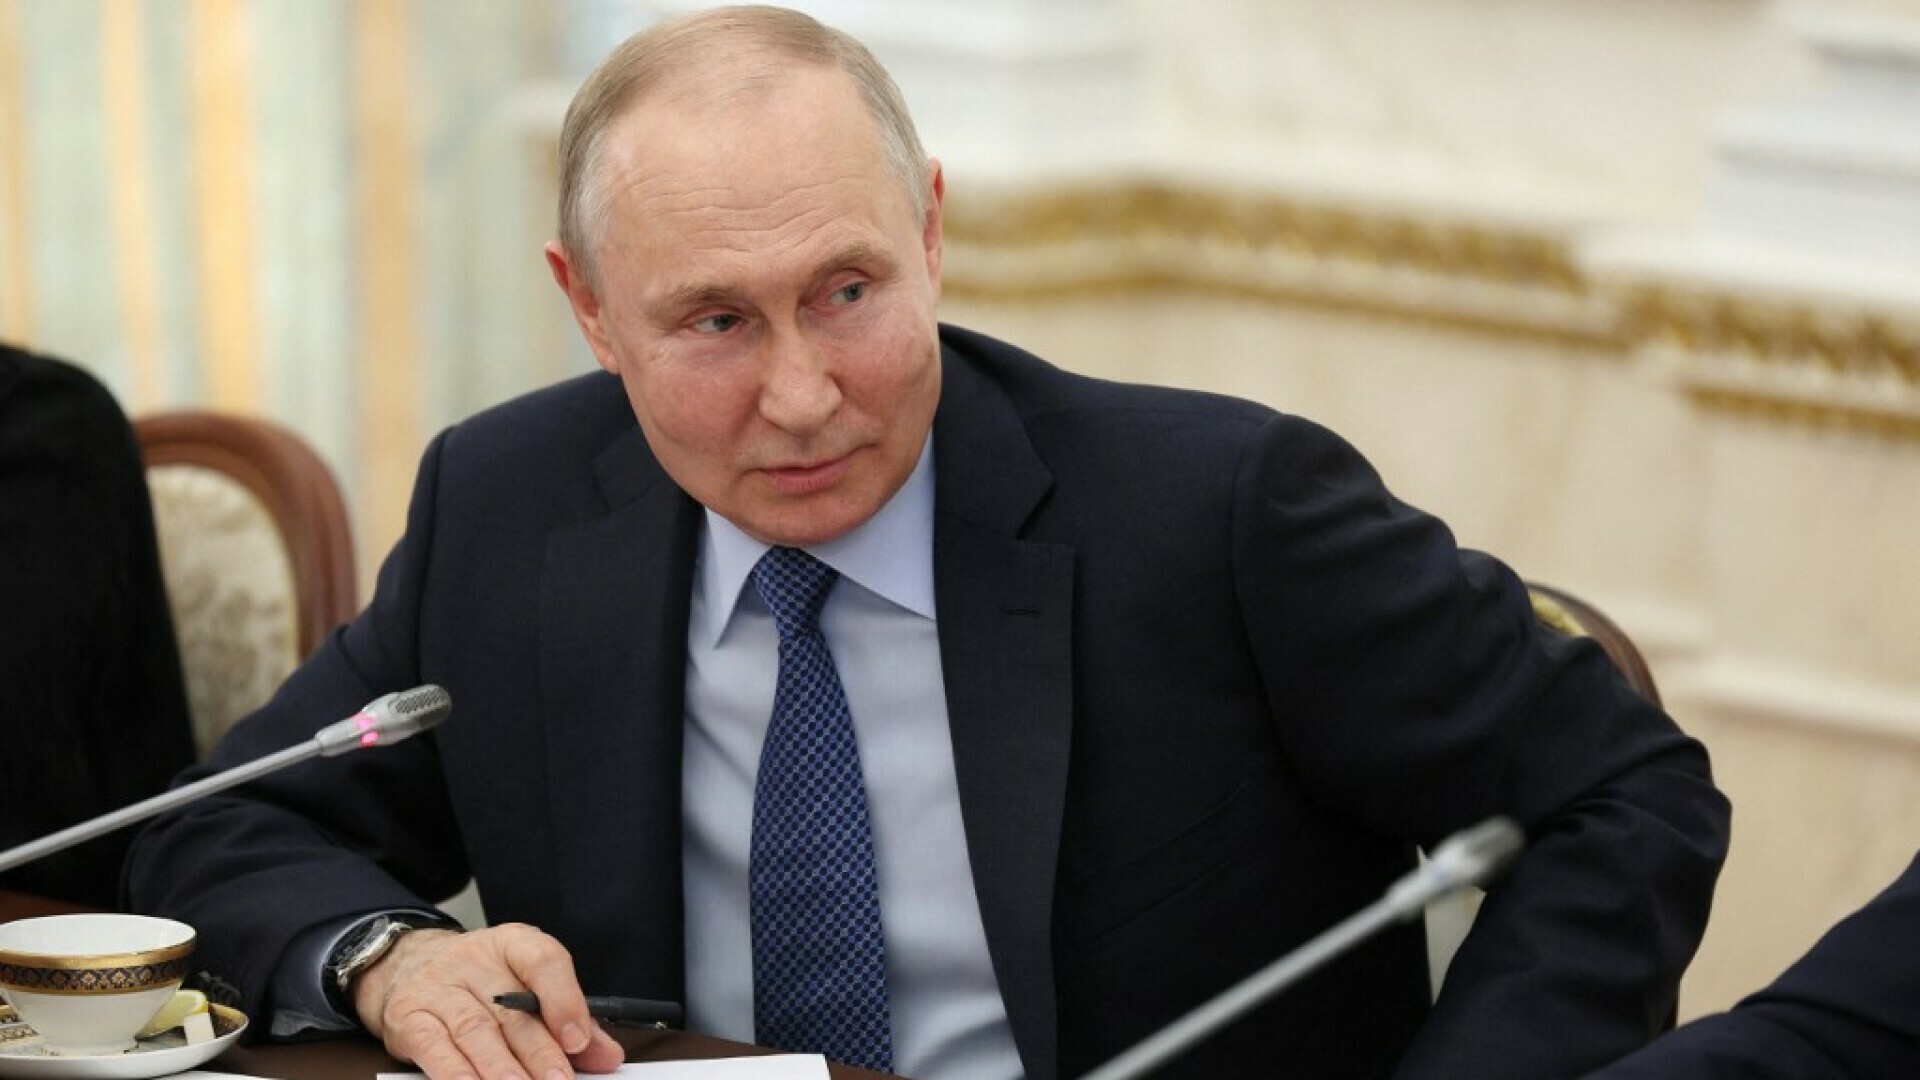 Putin upozorio Zapad: “Rusija bi mogla upotrijebiti nuklearno oružje i uništiti dio središta Kijeva, ali…”